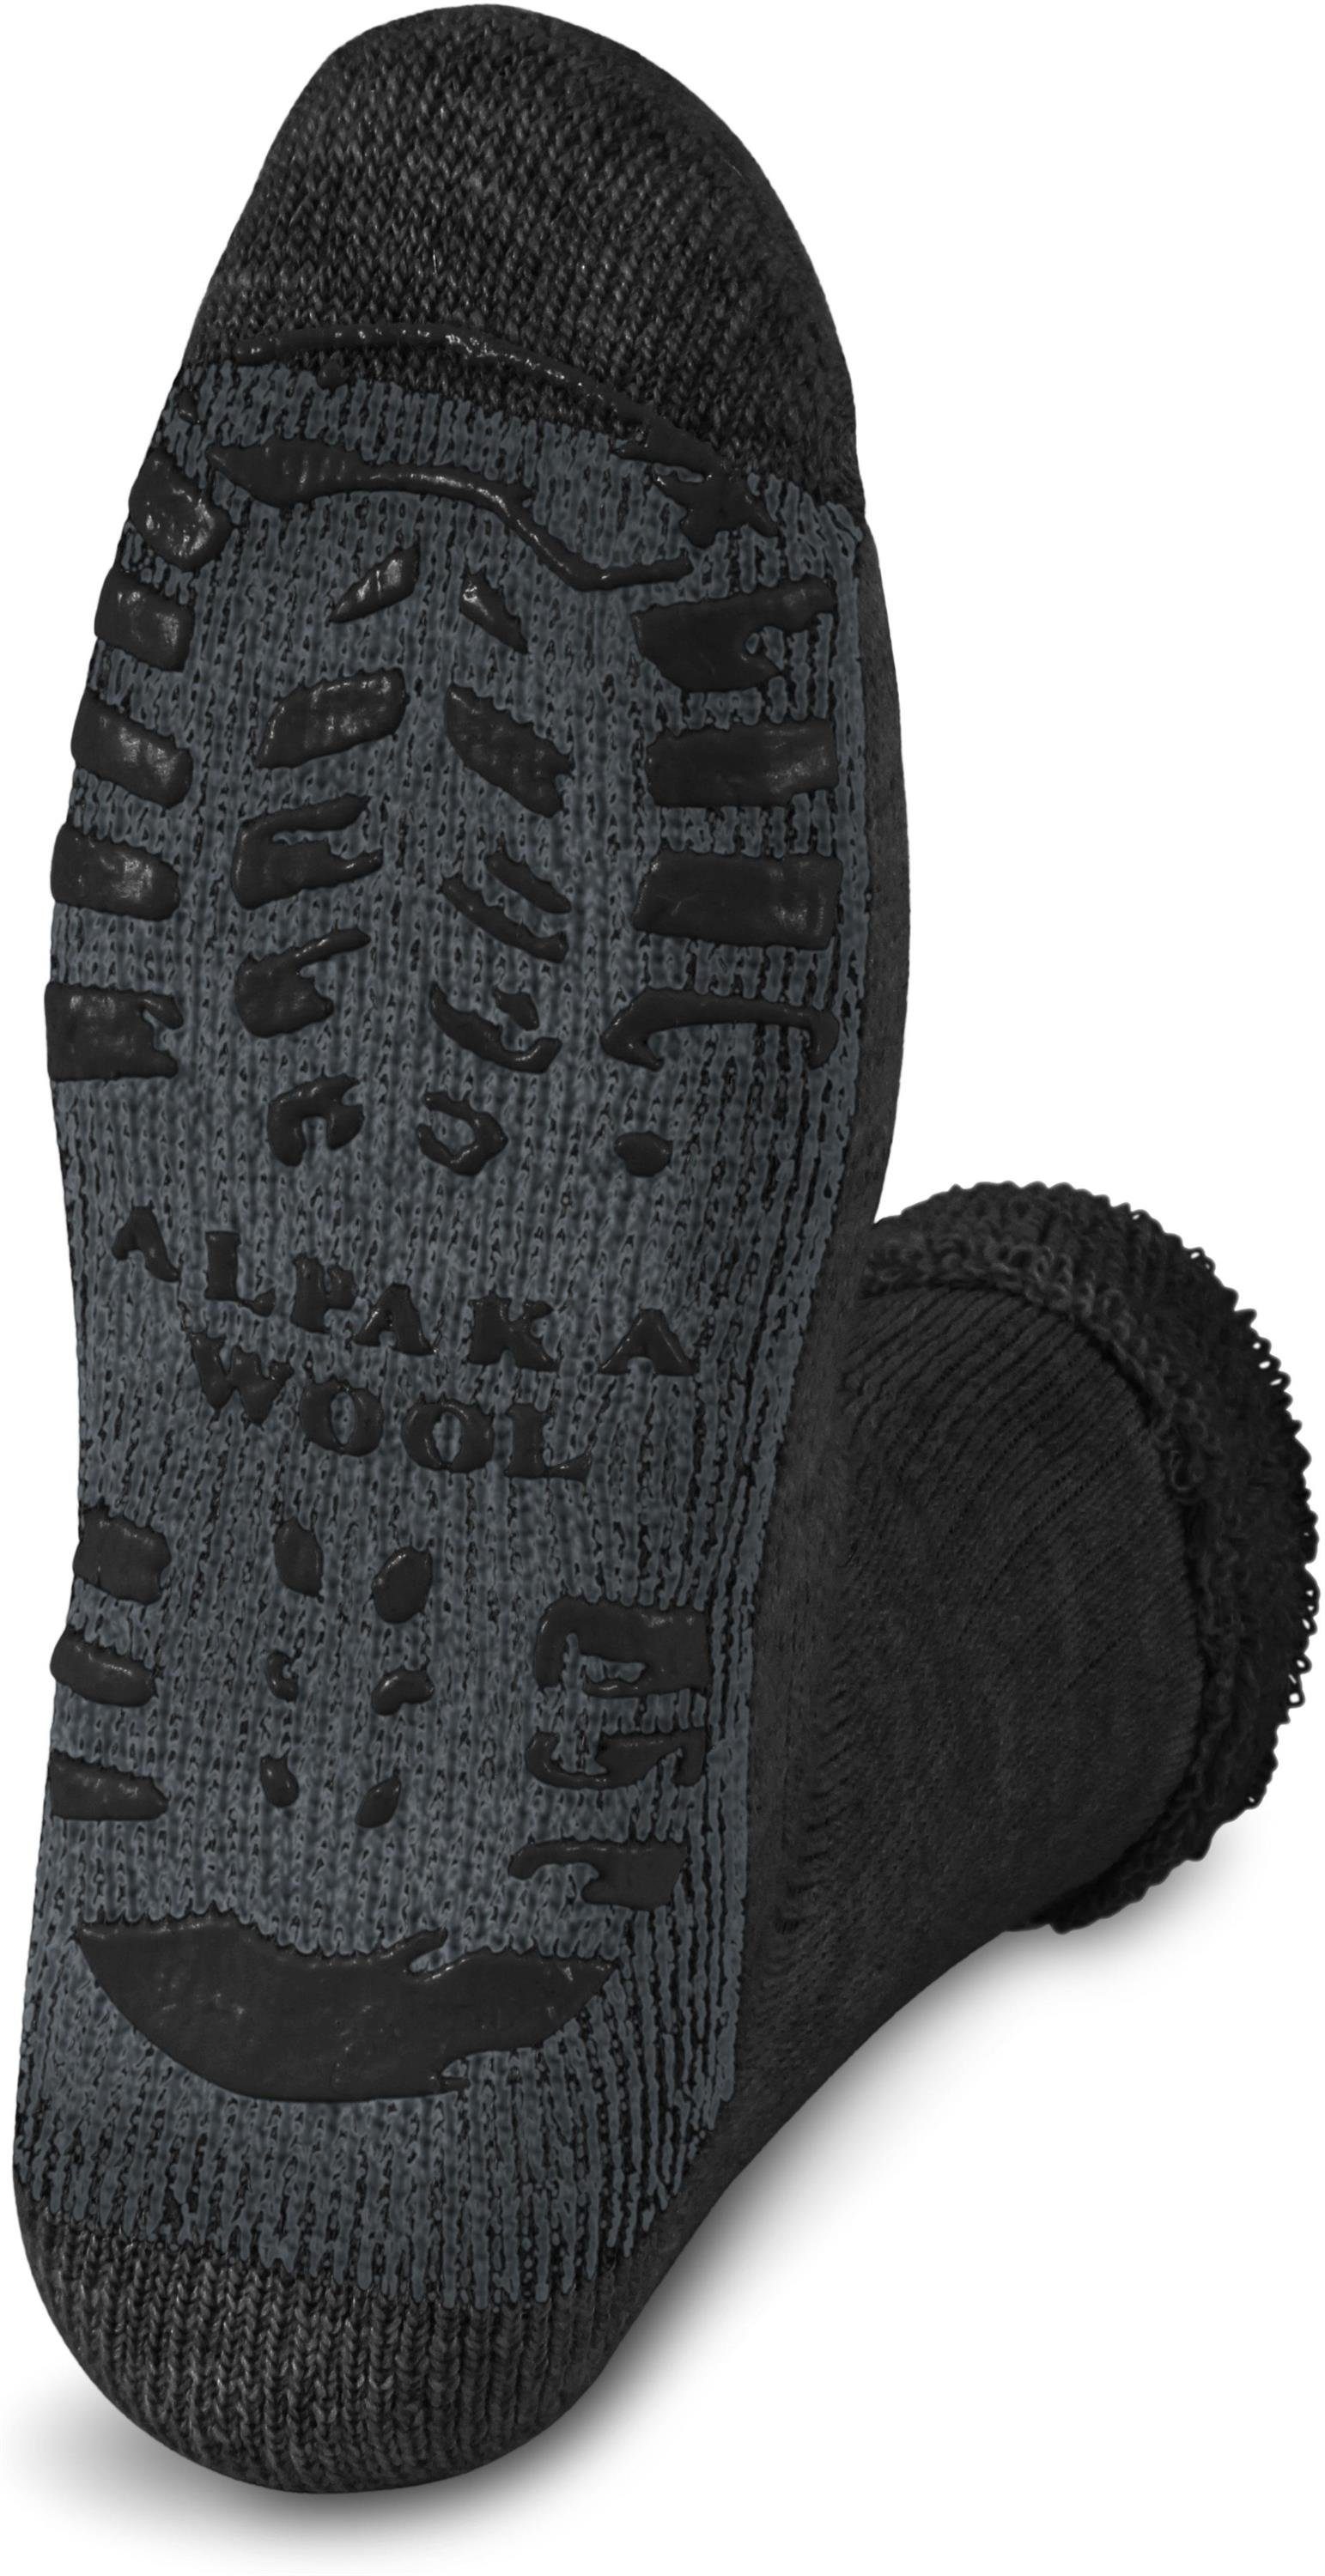 Wäsche/Bademode Socken normani ABS-Socken Alpaka-Wollsocken mit ABS-Druck (1 Paar) hochwertige Alpaka-Wolle